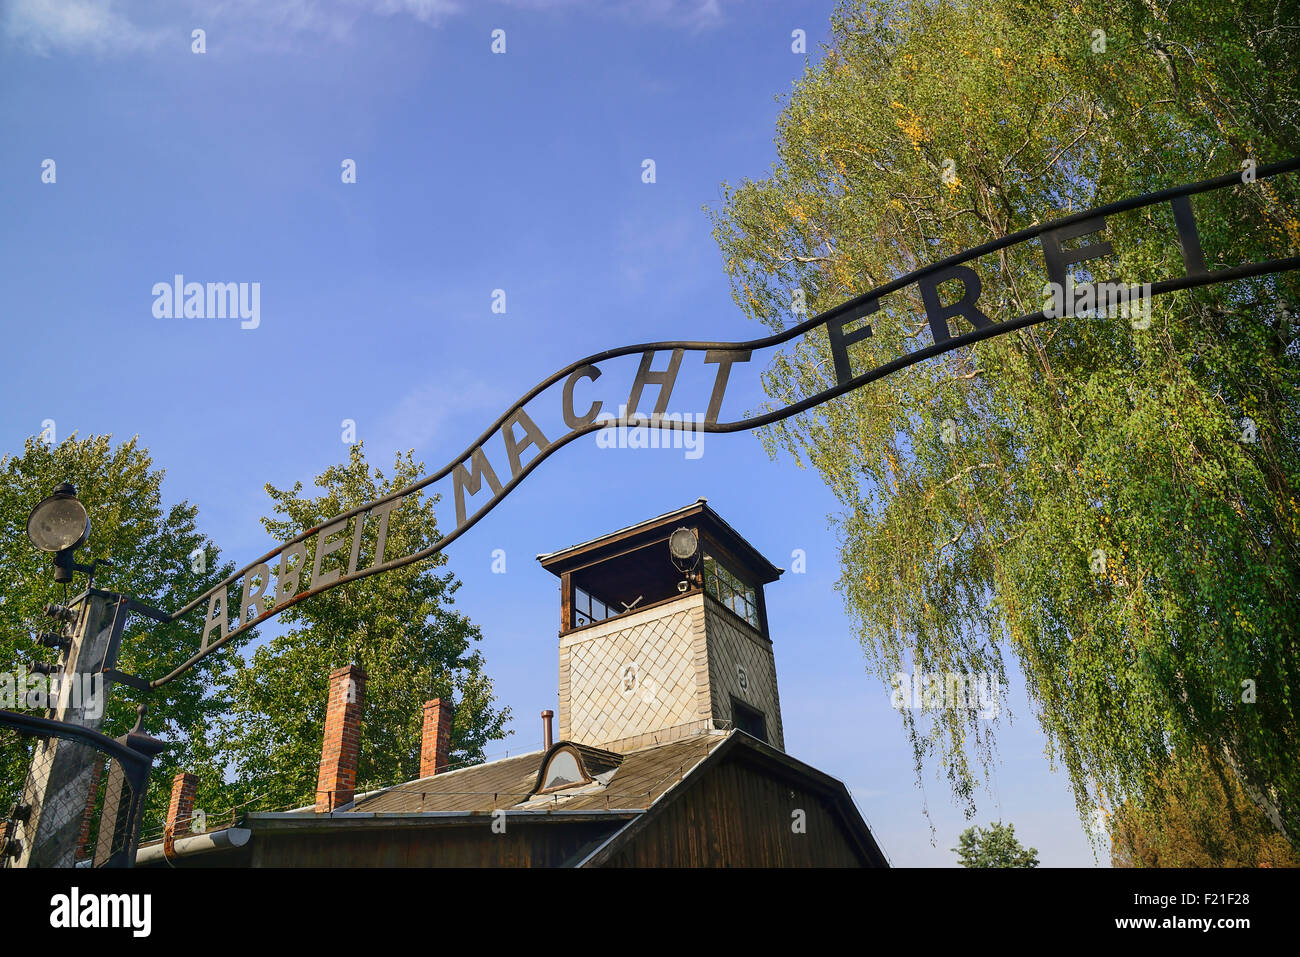 Polen, staatliches Museum Auschwitz-Birkenau, Auschwicz KZ, Motto "Arbeit Macht Frei" über dem Eingangstor. Stockfoto